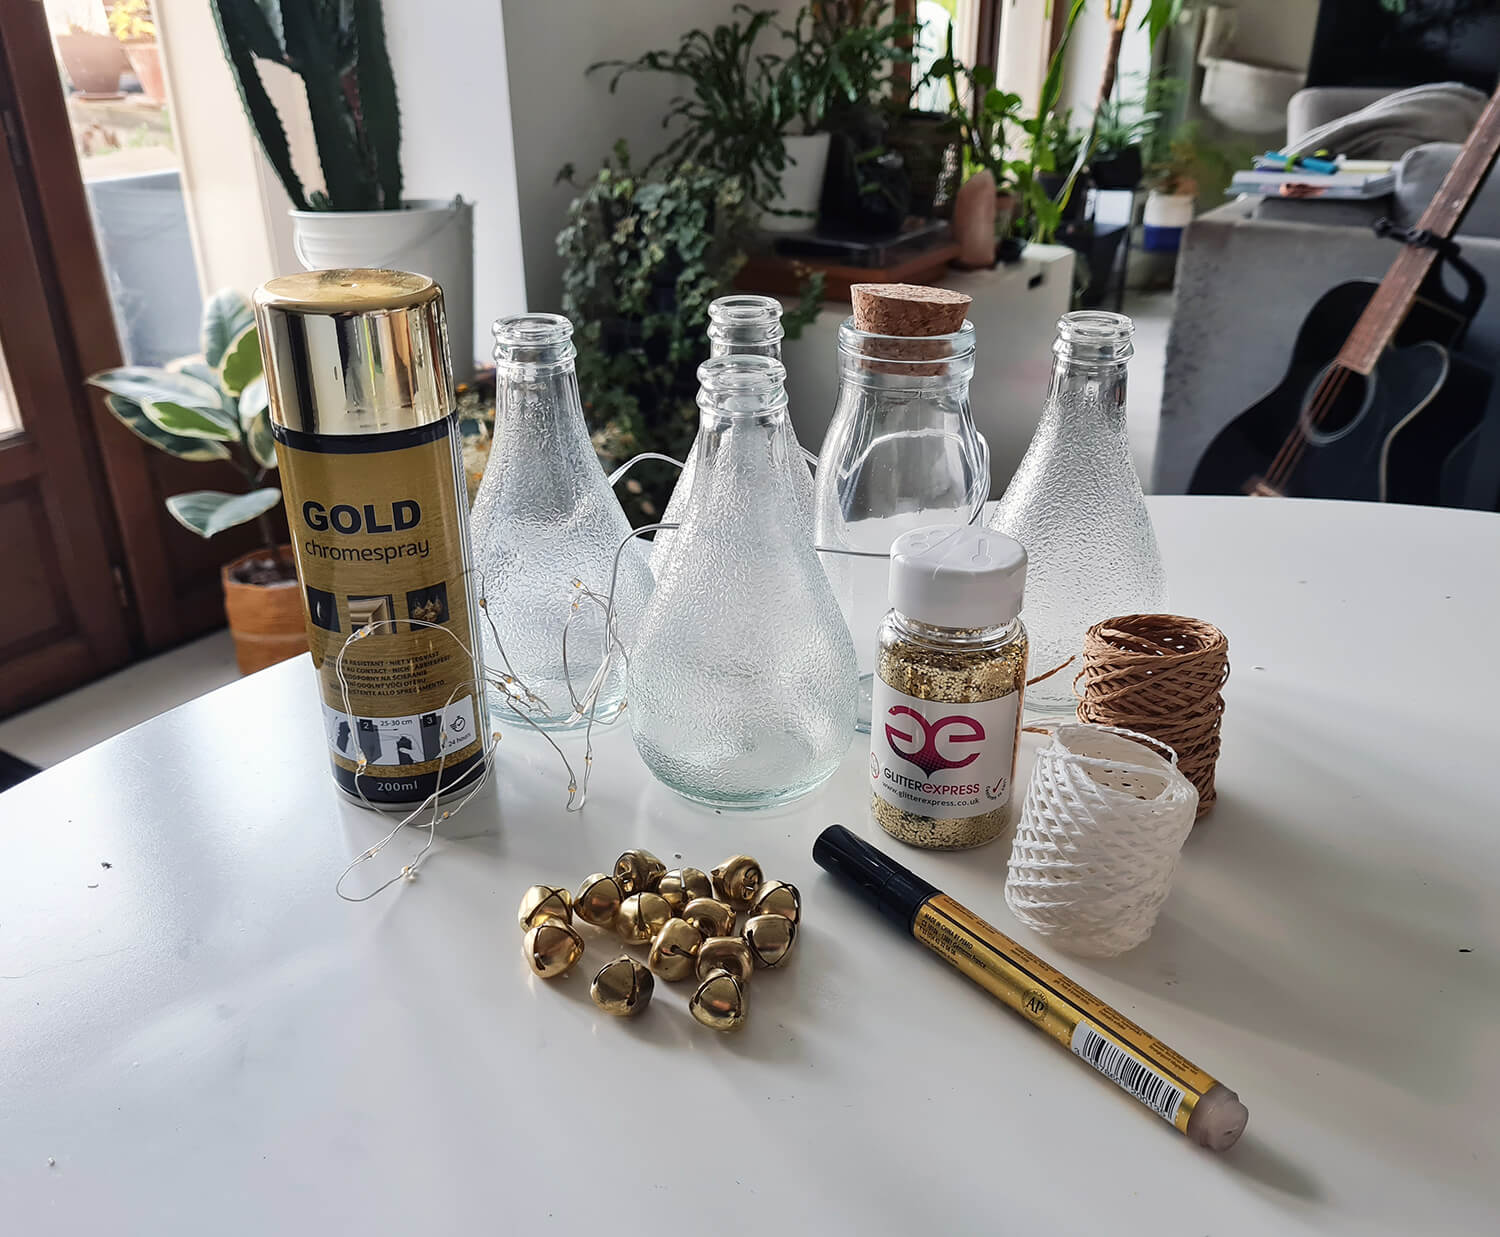 20201211 132508 - DIY festif : recycler des bouteilles en verre pour décorer la table des fêtes